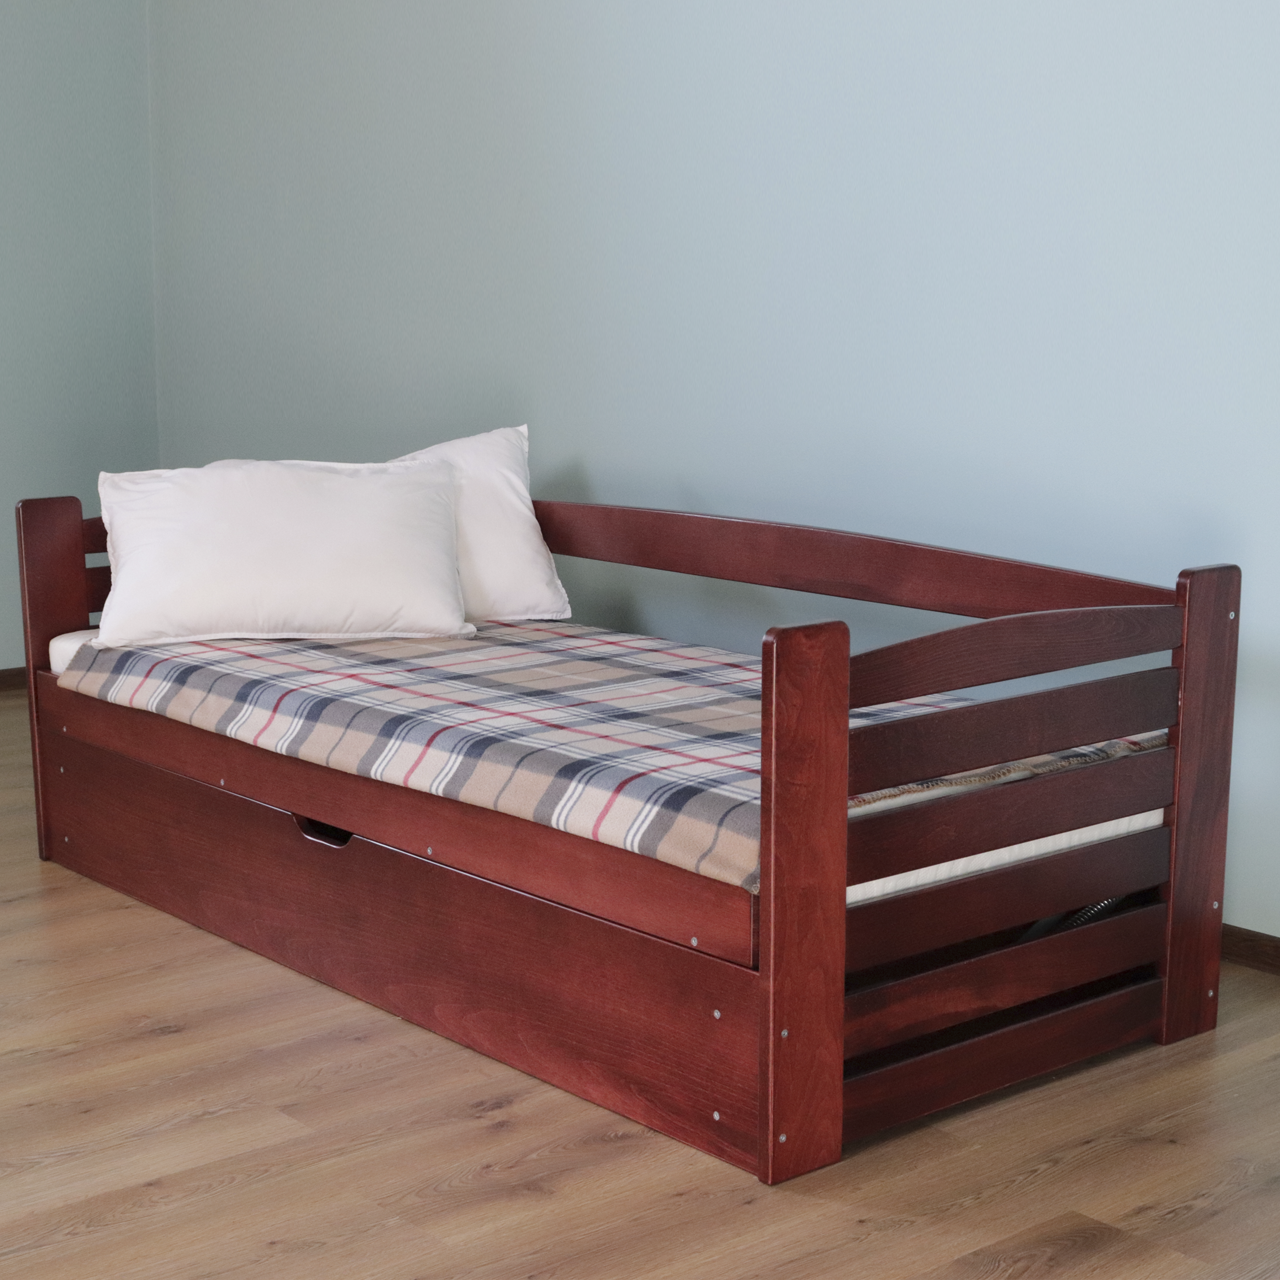 Ліжко дитяче дерев'яне Карлсон з підйомним механізмом (масив бука)